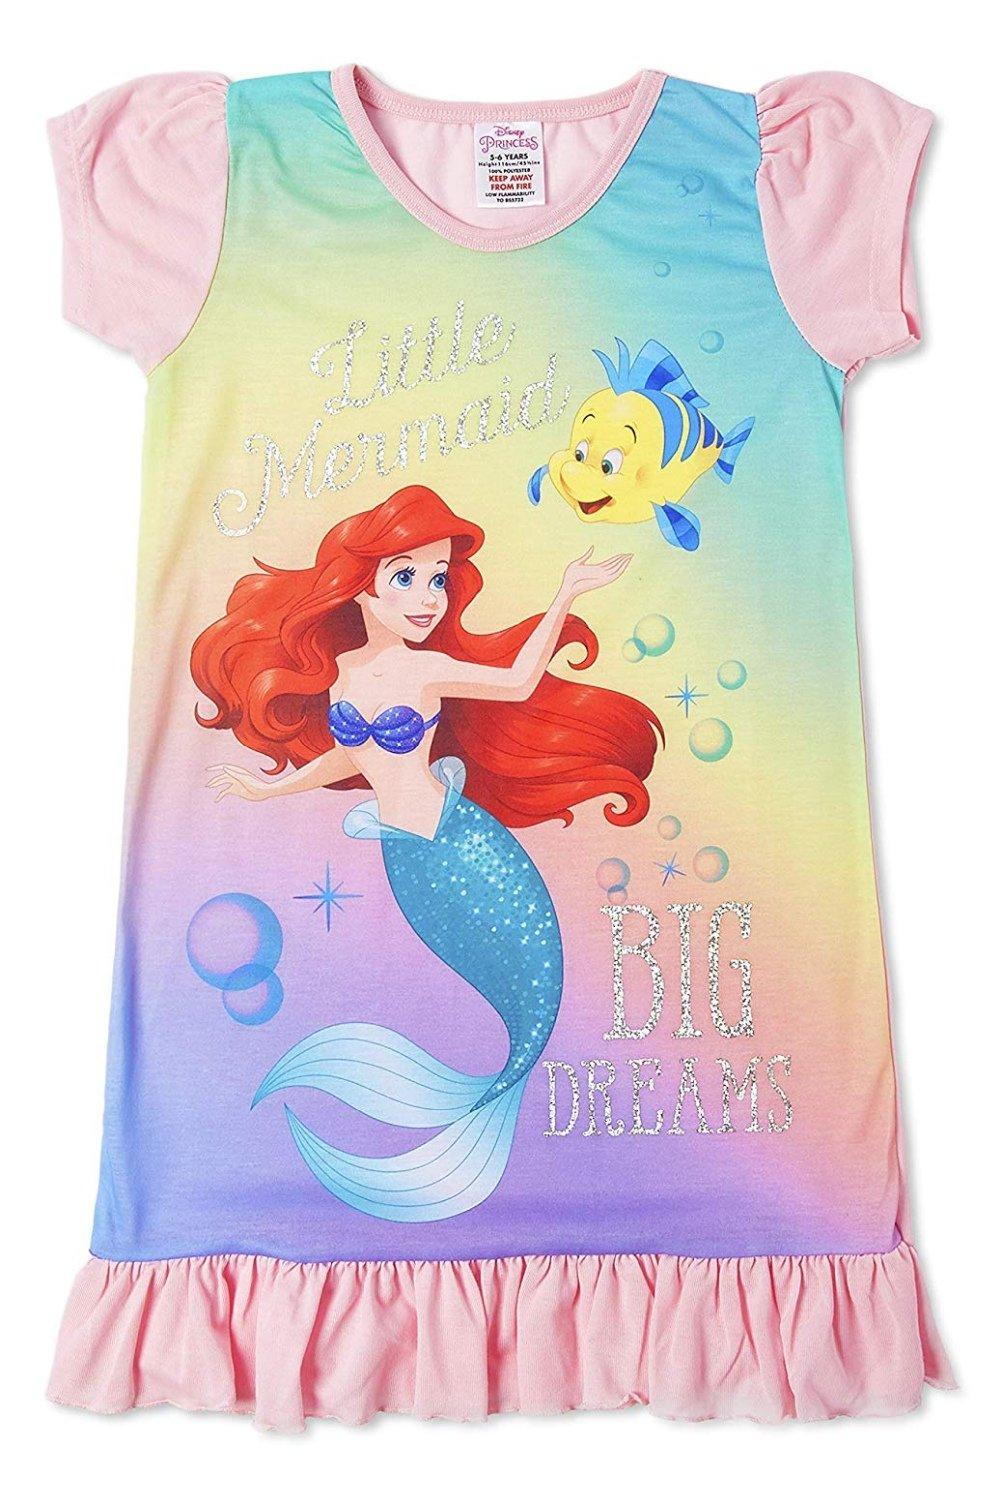 Ночная рубашка Ariel с коротким рукавом Disney, мультиколор fdfklak m xxl размера плюс летняя материл х б женская ночная 2021 свободное платье без рукавов ночные рубашки для девочек повседневные тонкие одн